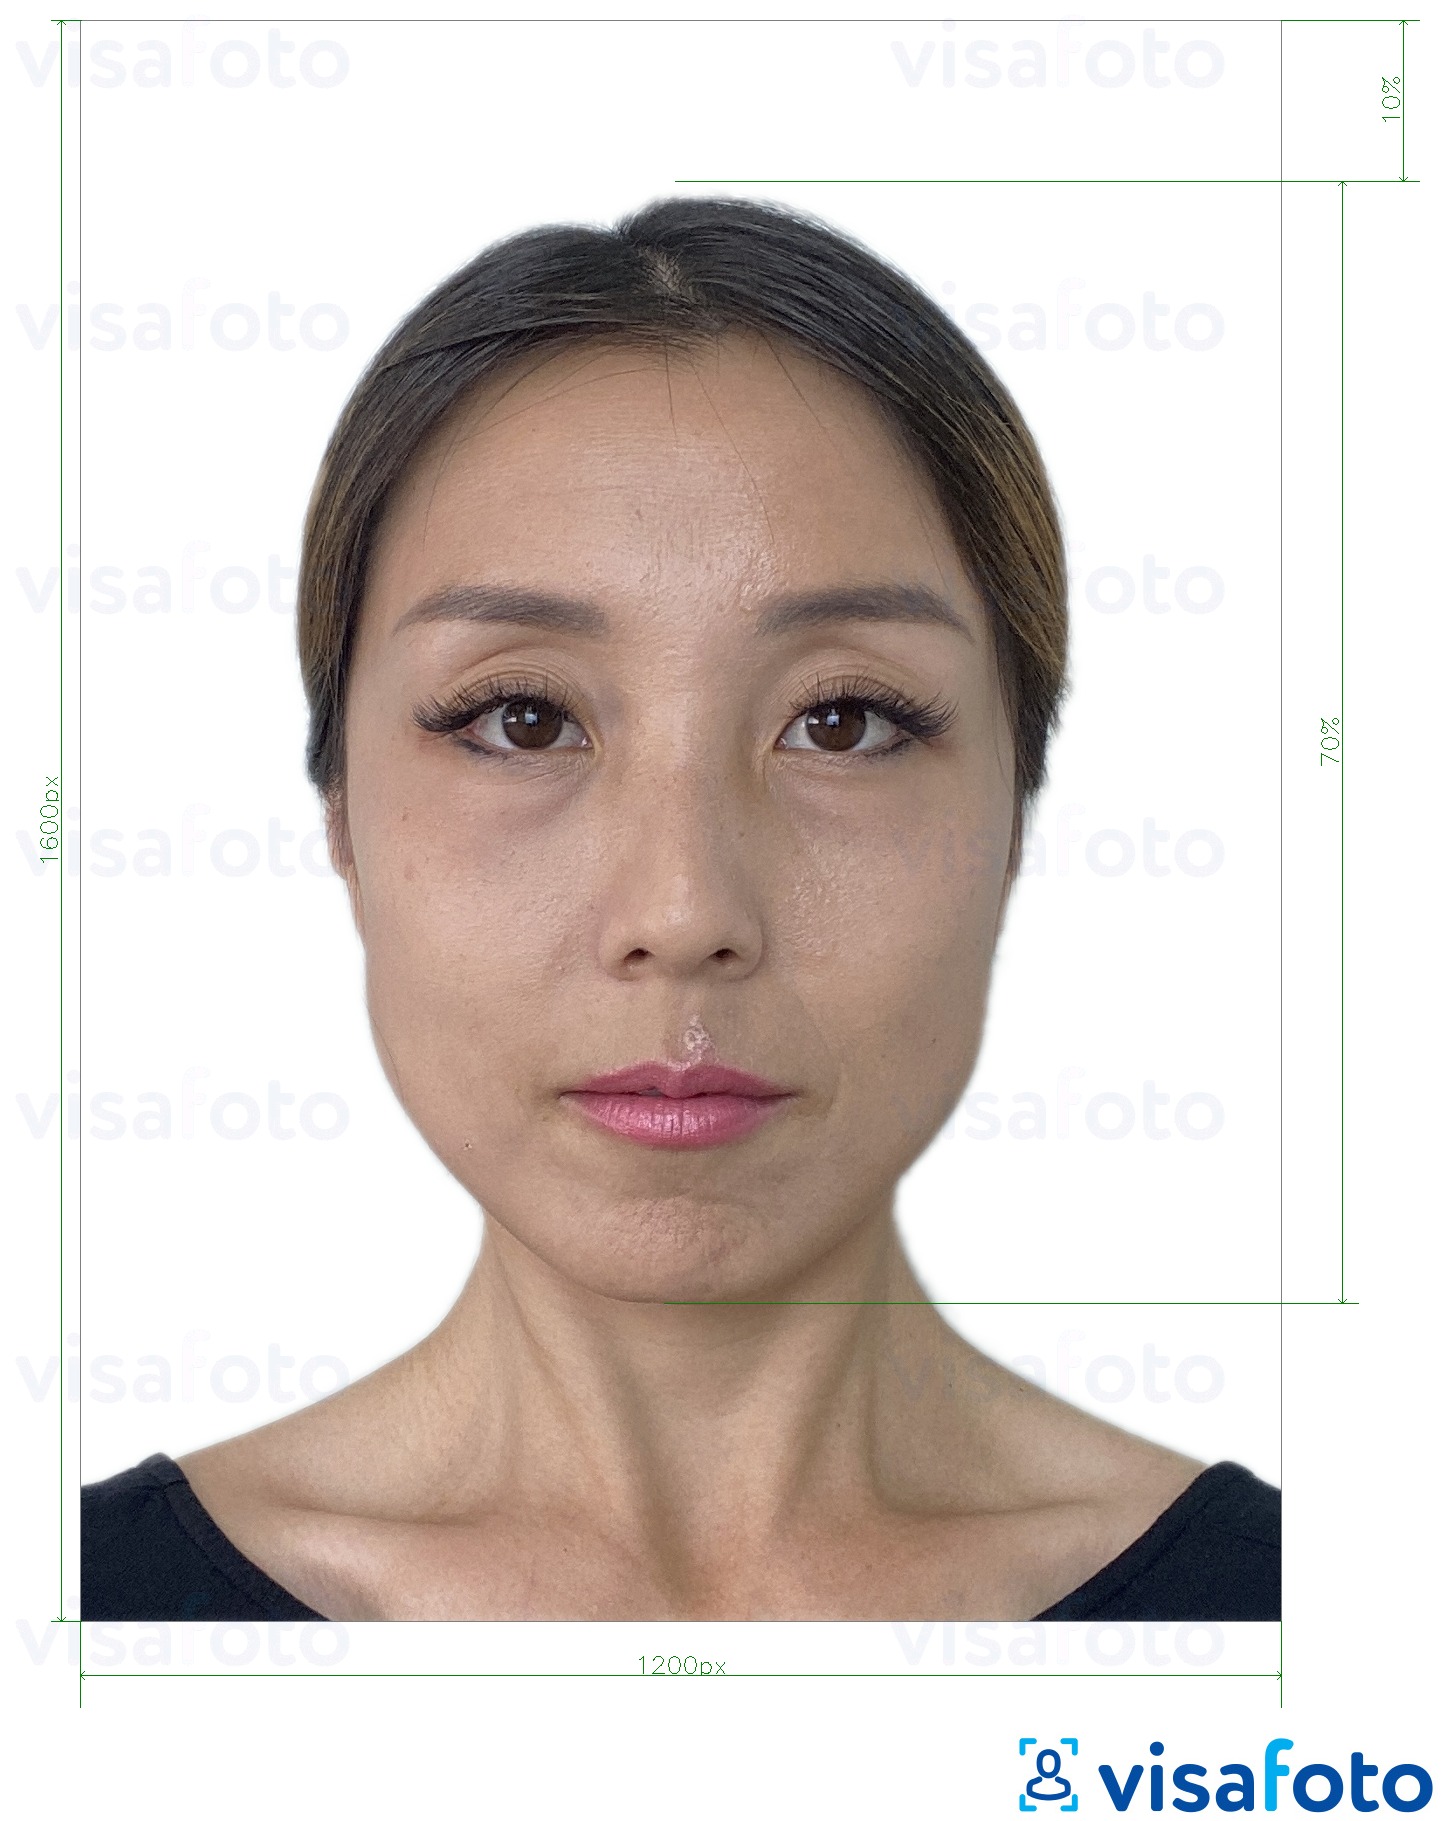 Хонг Конг онлайн цахим паспорт 1200x1600 пиксел Болоцоот зургийн жишээ